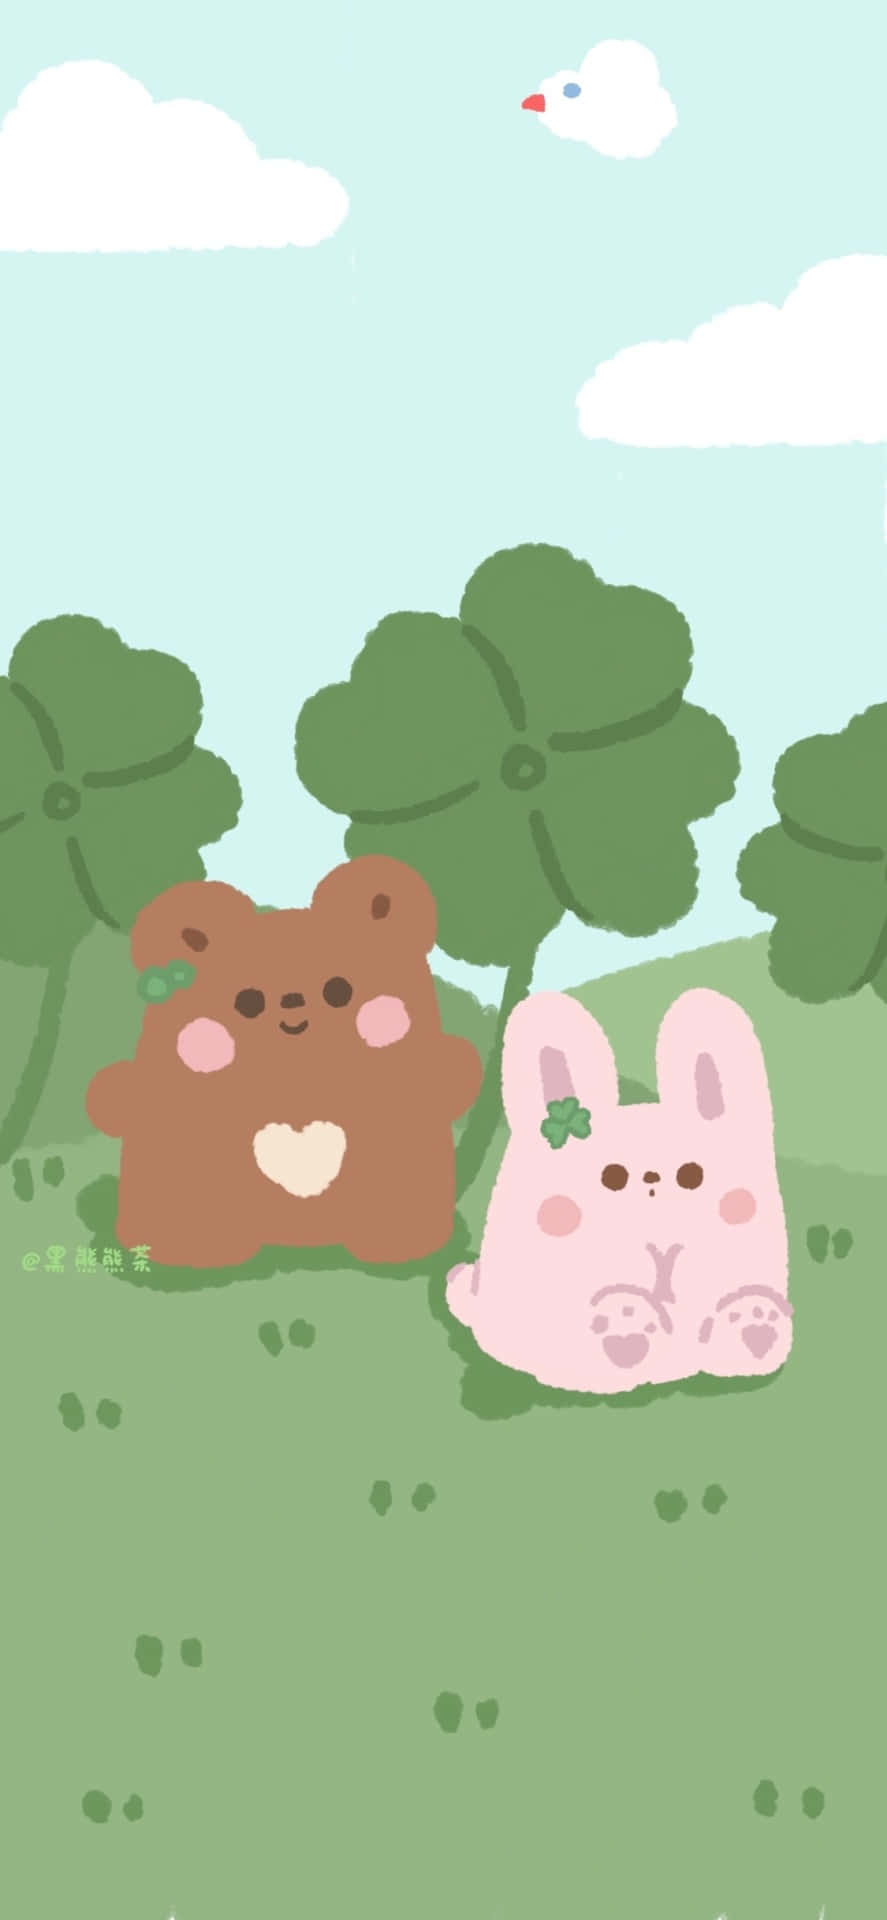 En tegning af to teddybjørne i græsset Wallpaper